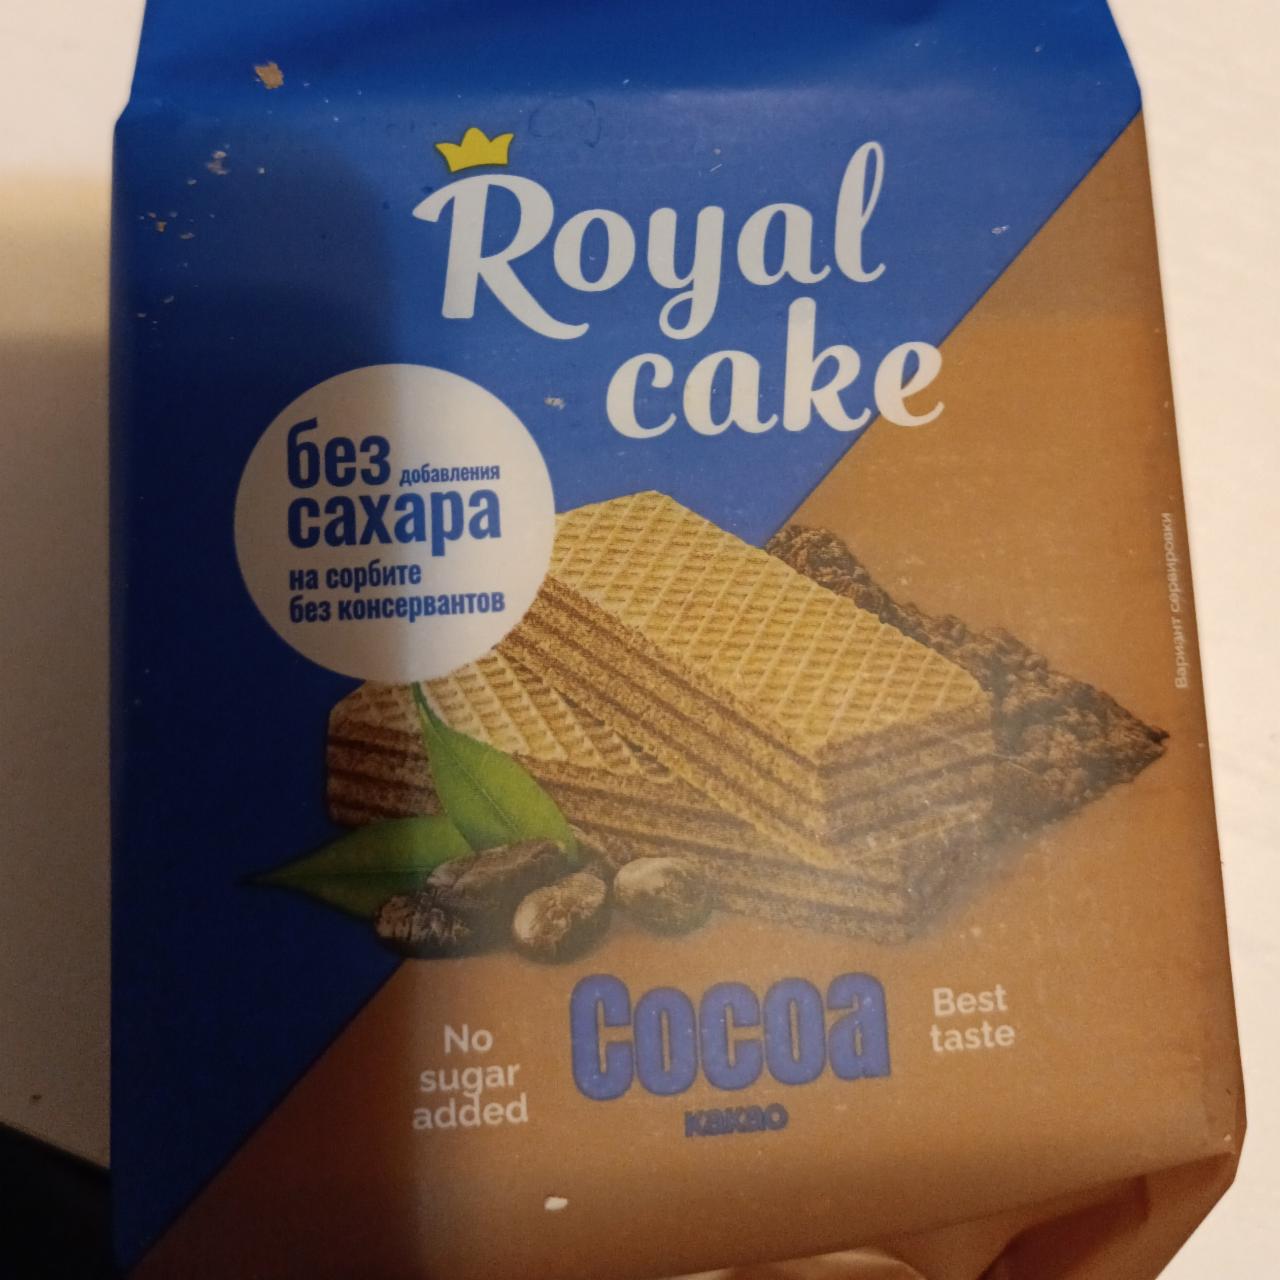 Фото - Вафли на сорбите с какао Royal Cake